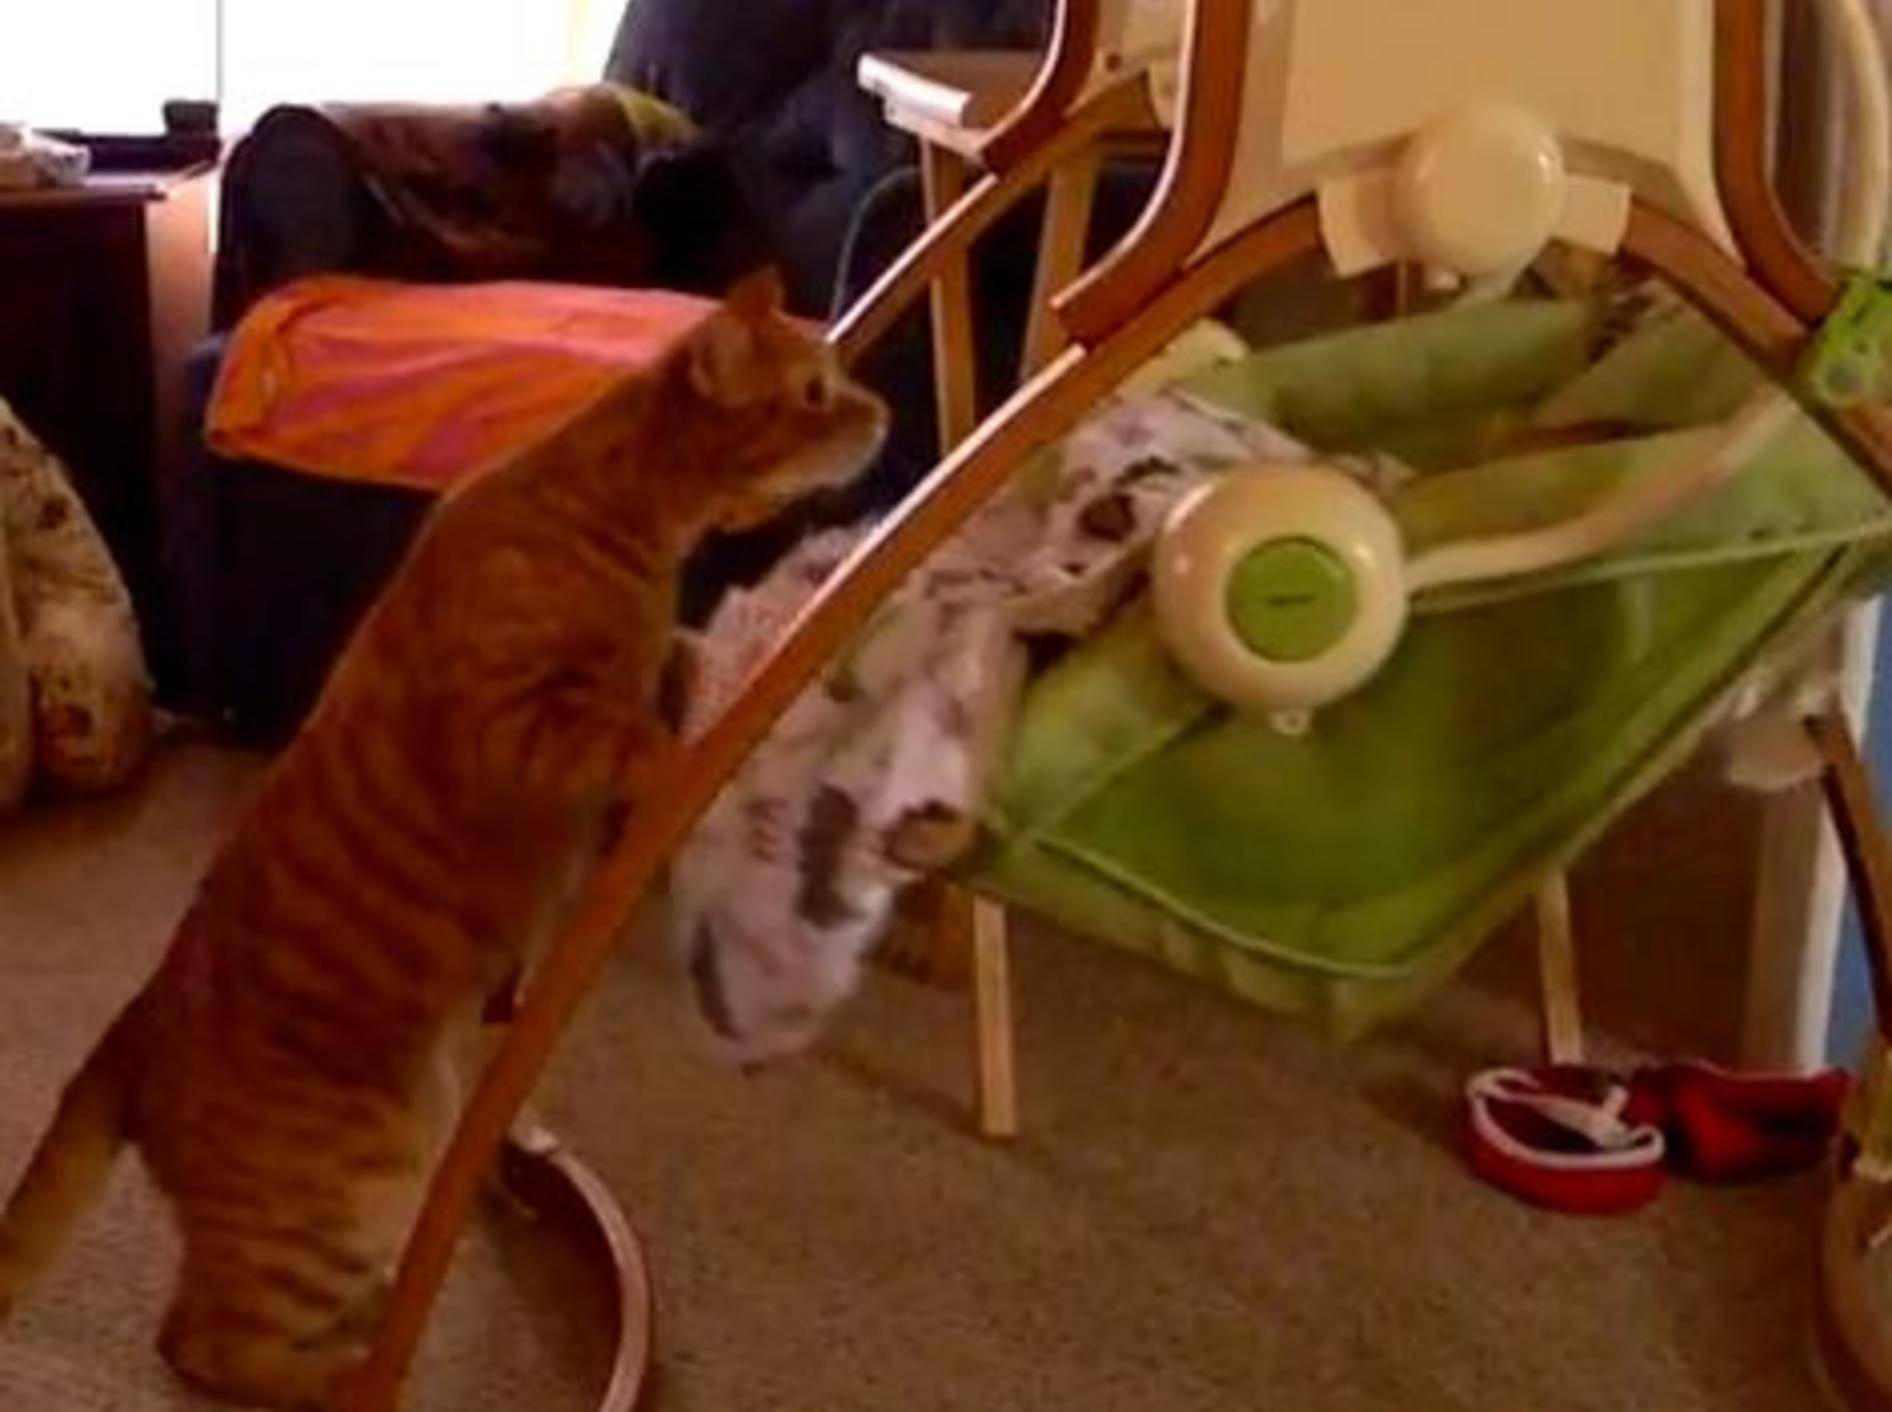 Fürsogliche Katze spielt liebevollen Babysitter — Bild: Youtube / Mr2old4fun